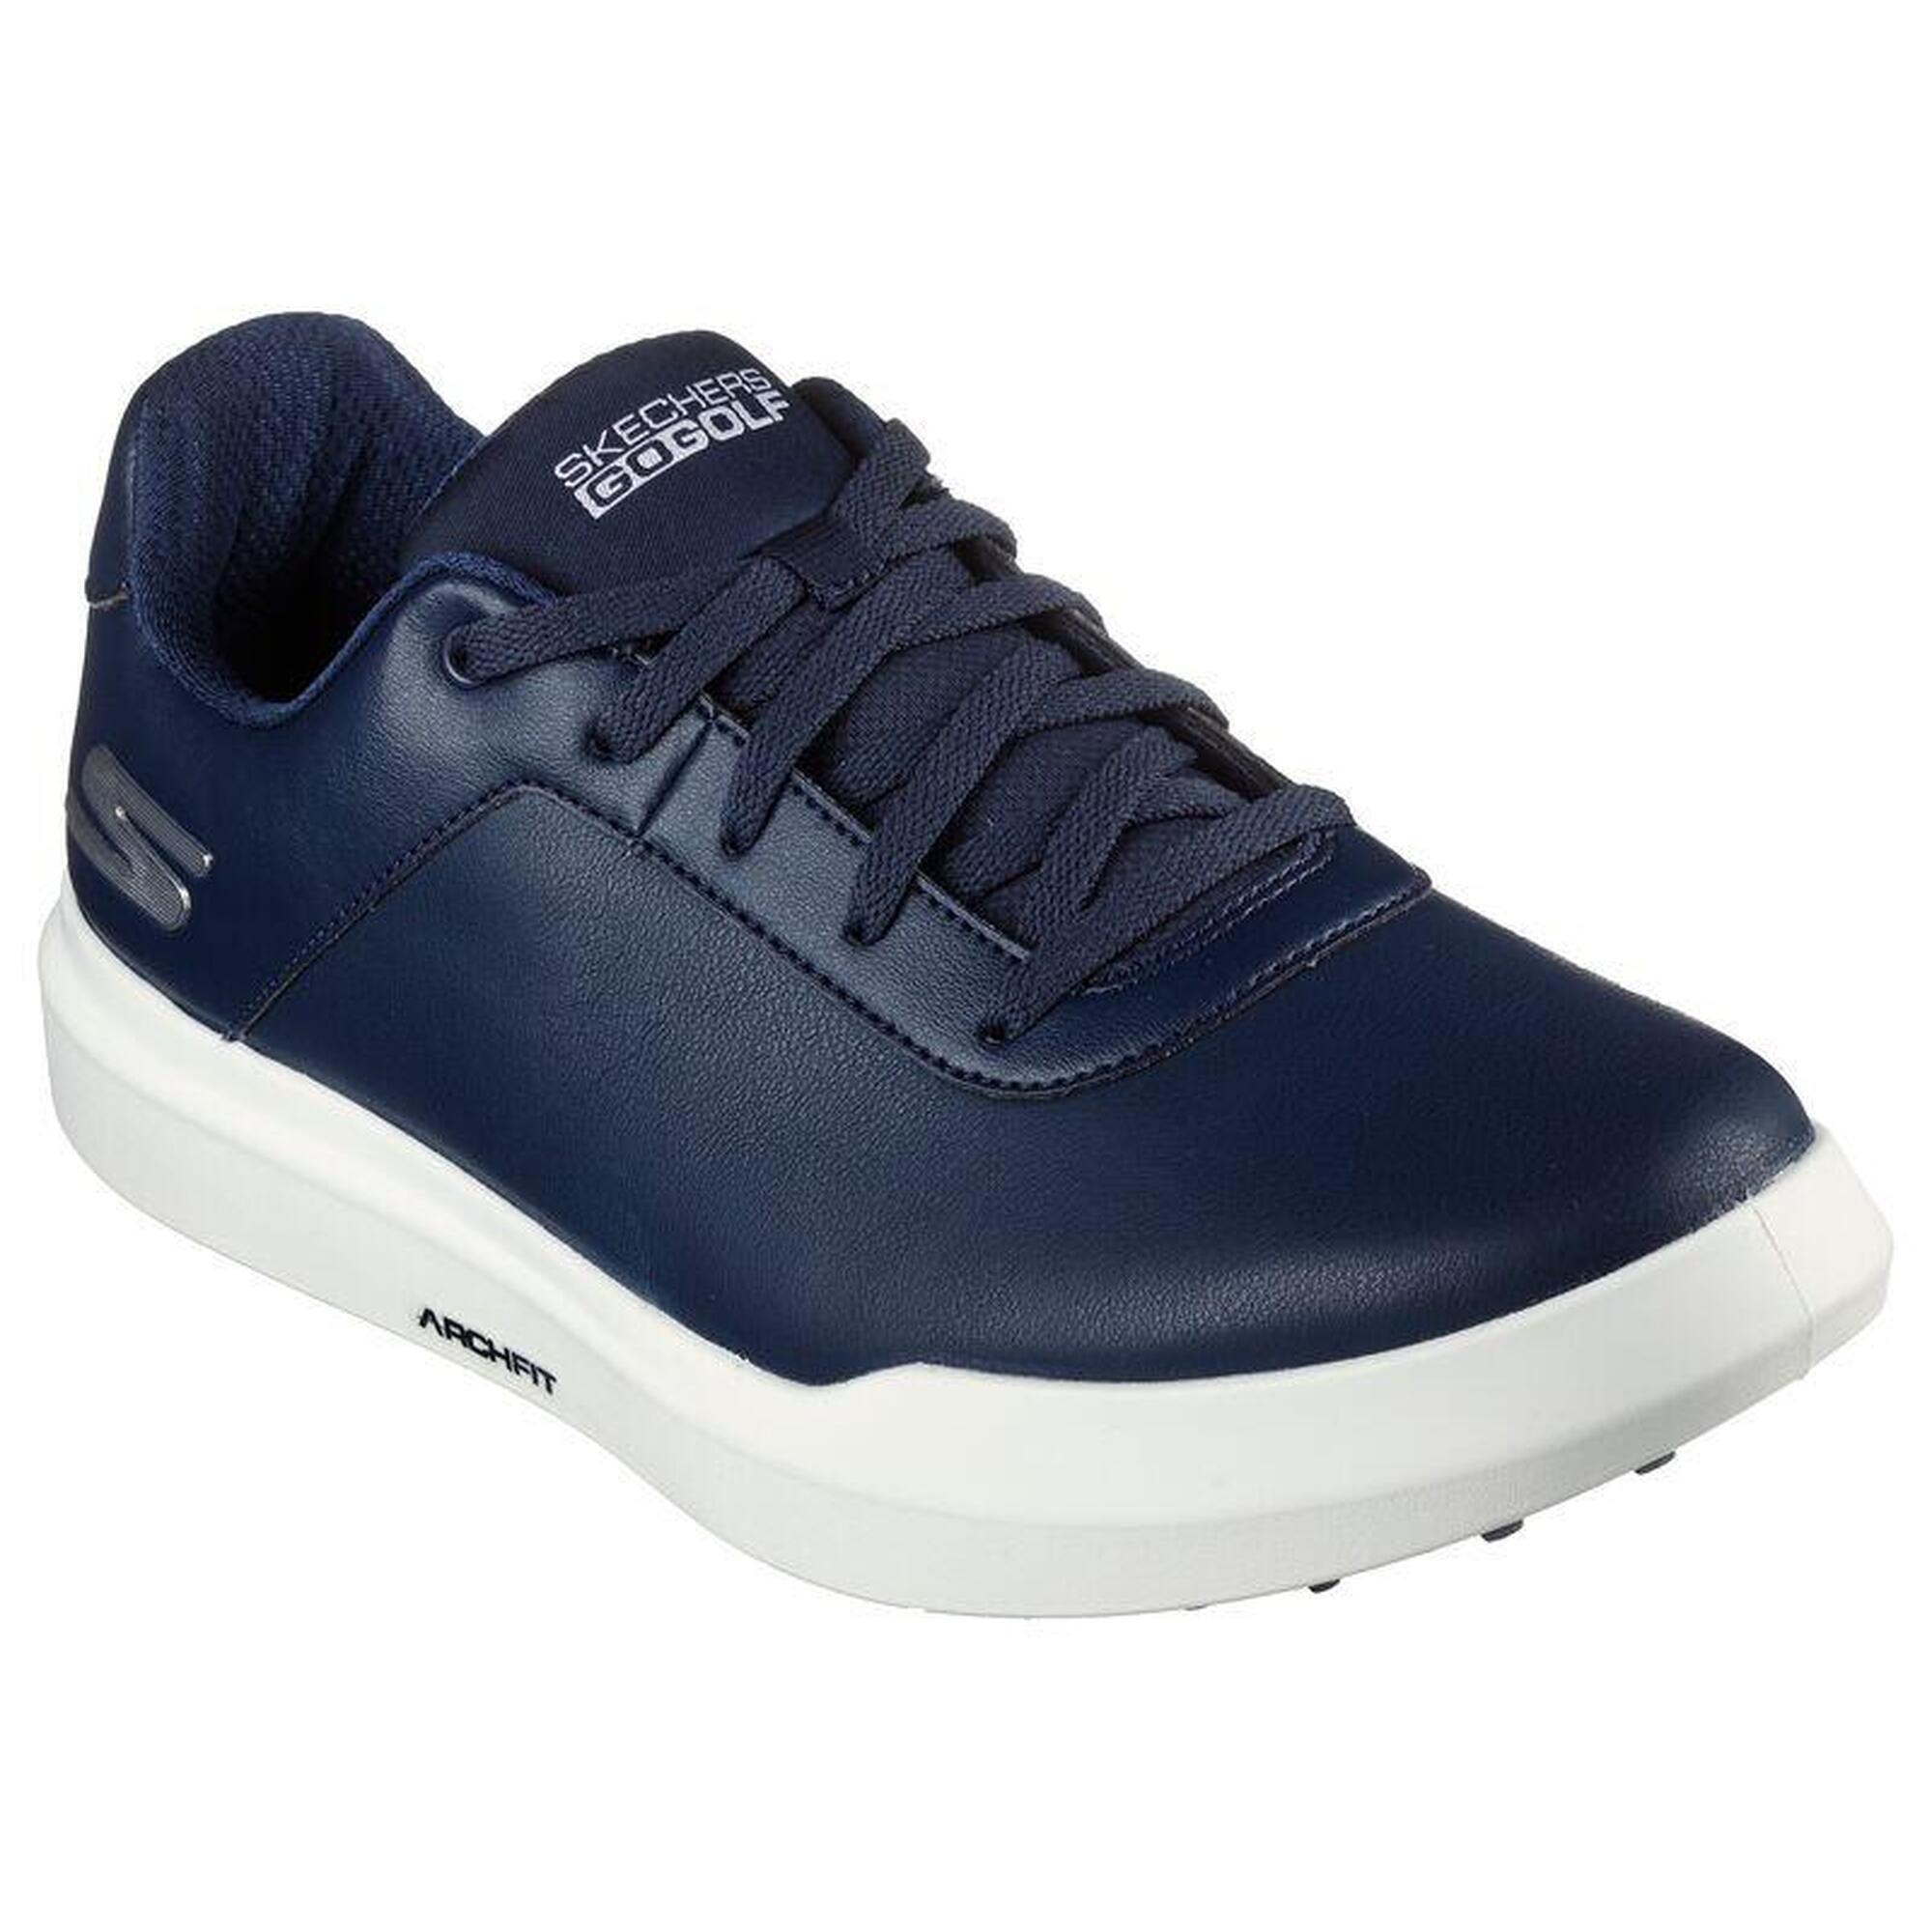 Skechers Go Golf Drive 5 Zapatos de Golf para Hombre Navy/Blanco